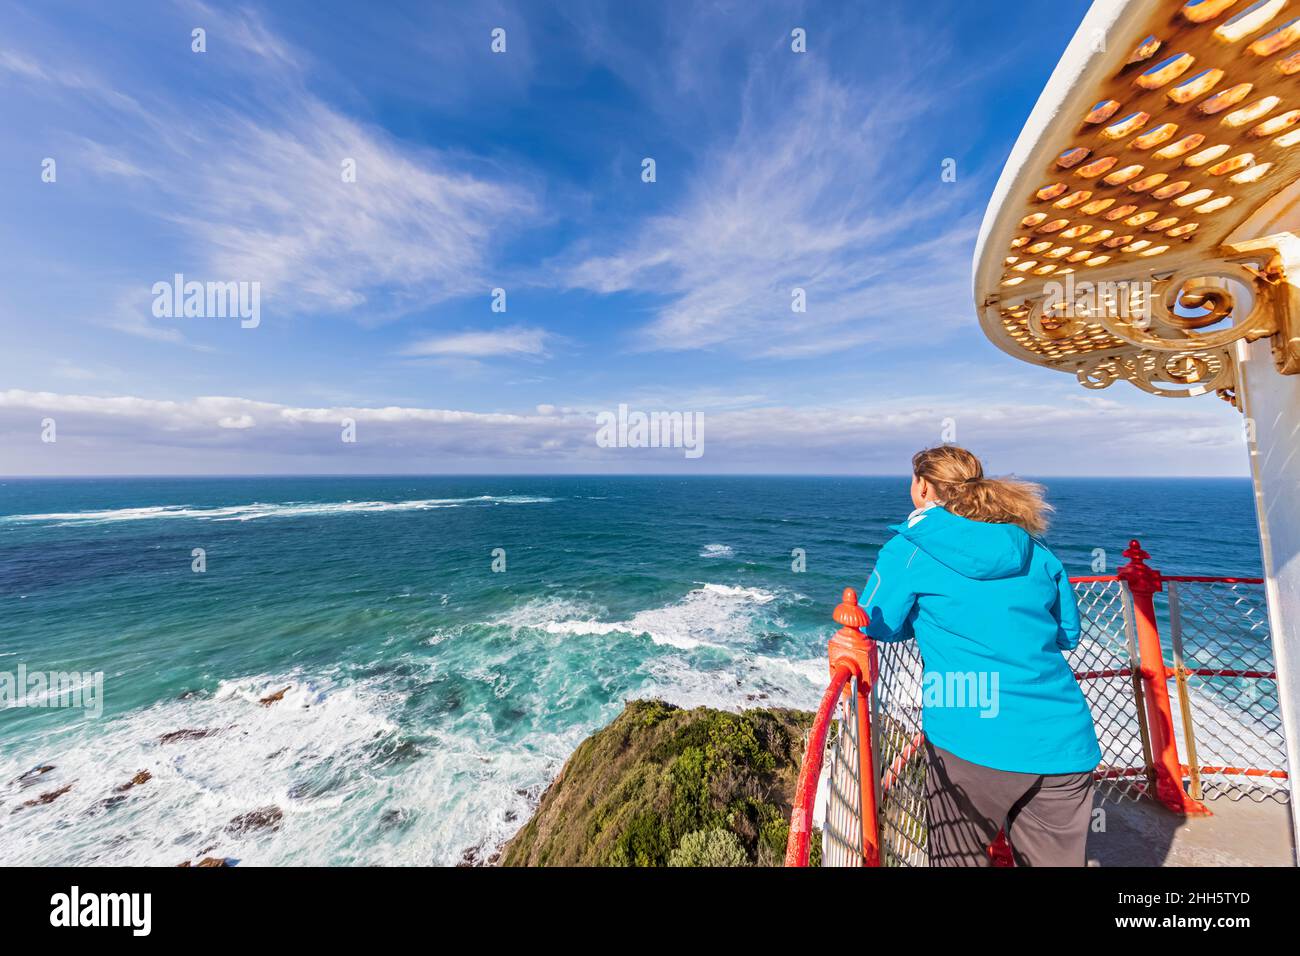 Australien, Victoria, Cape Otway, weibliche Touristen bewundern den Blick auf die Bass Strait vom Cape Otway Lighthouse Stockfoto